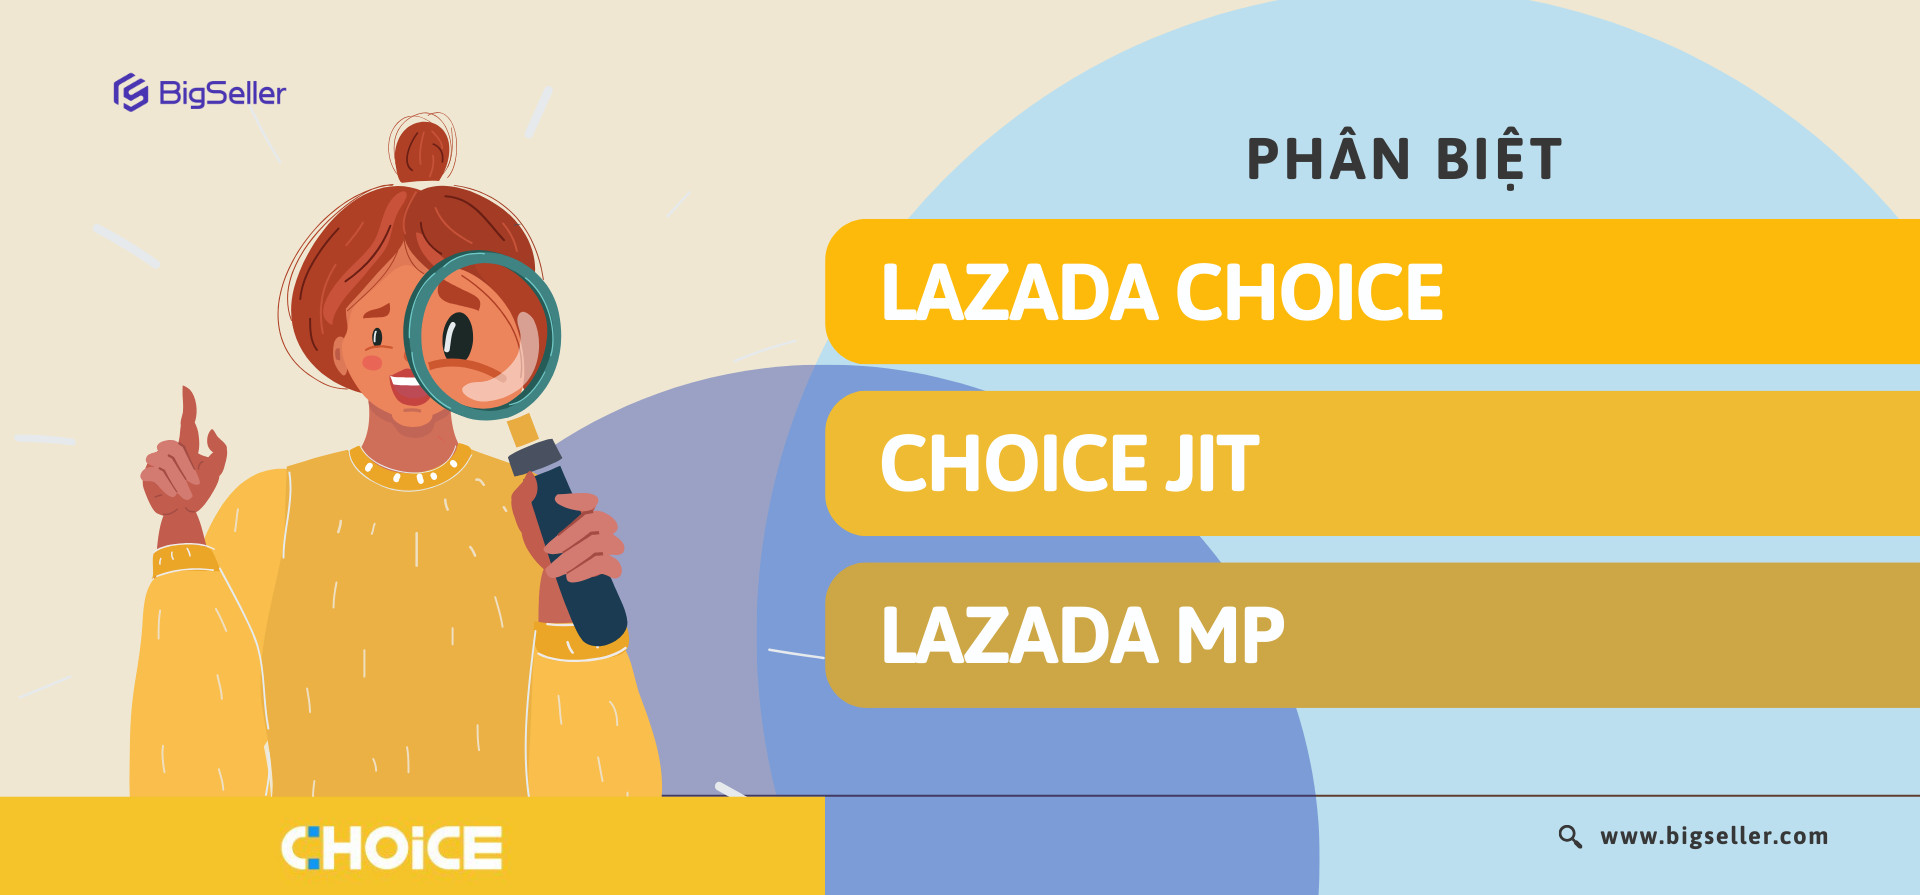 Choice Lazada là gì